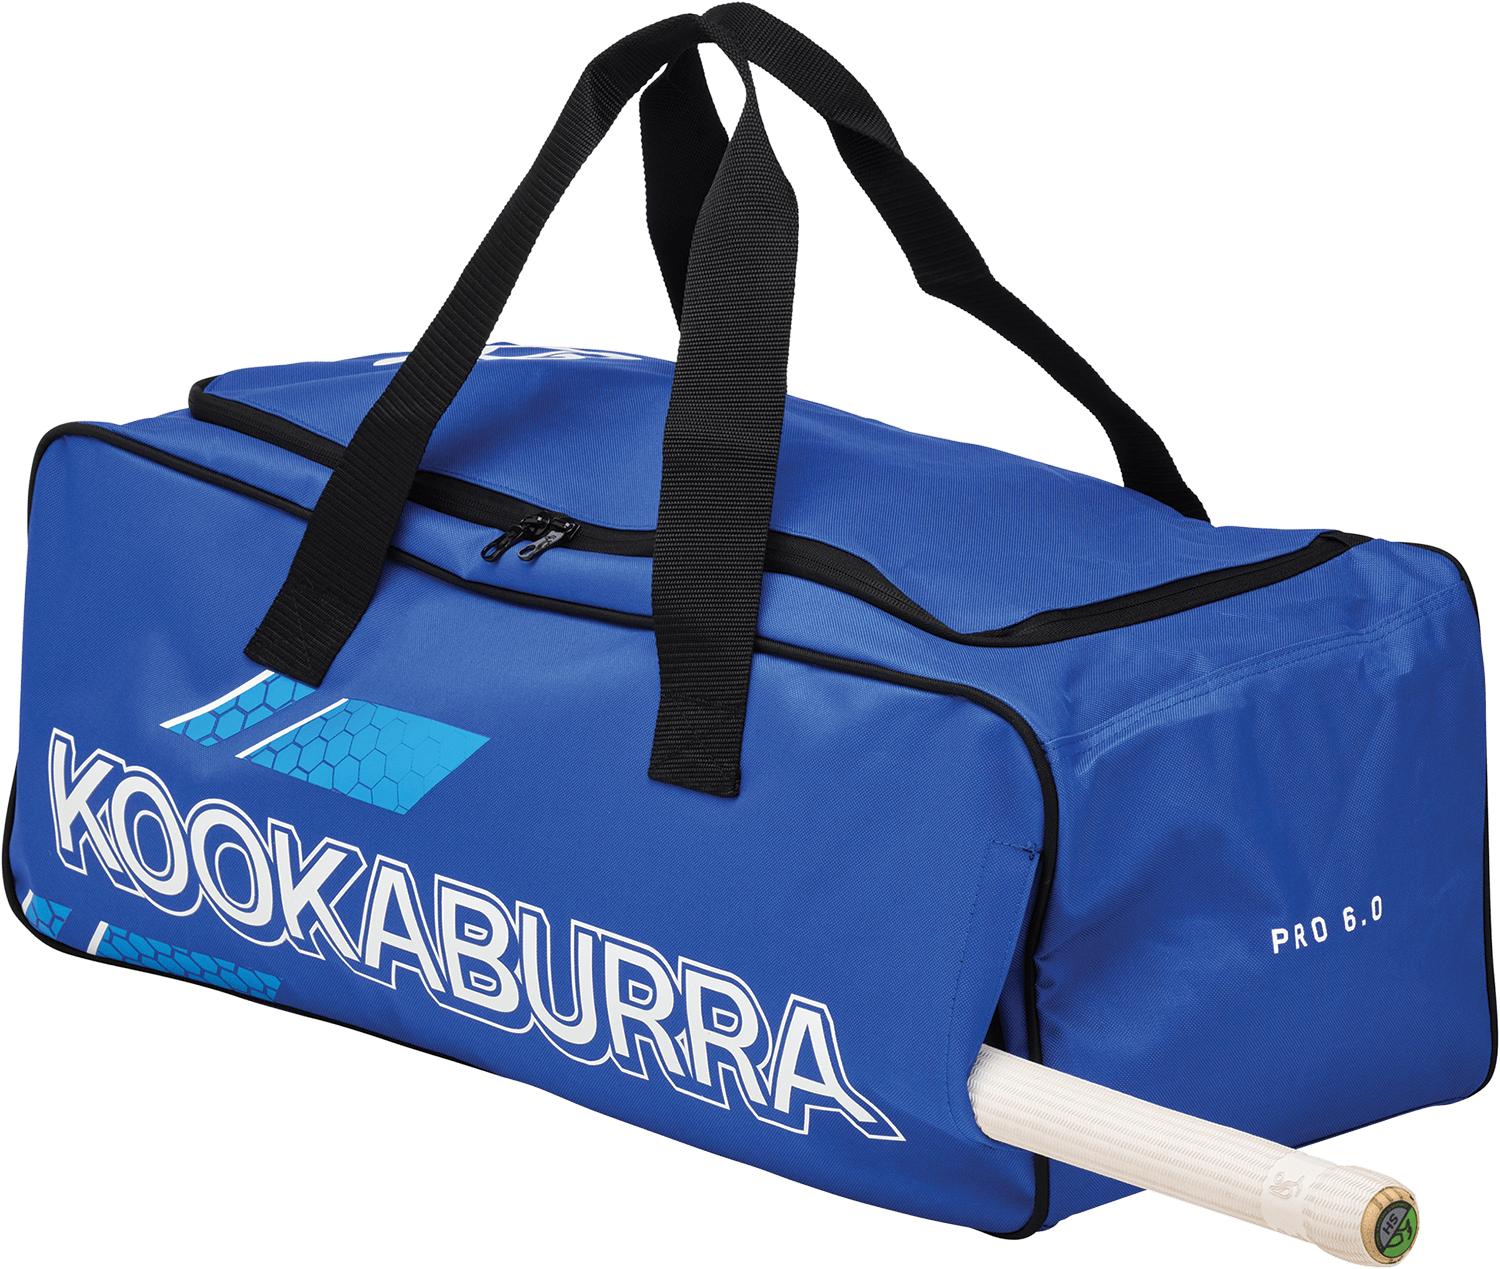 Kookaburra Cricket Bags Blue Kookaburra 6.0 Hold All Cricket Bag